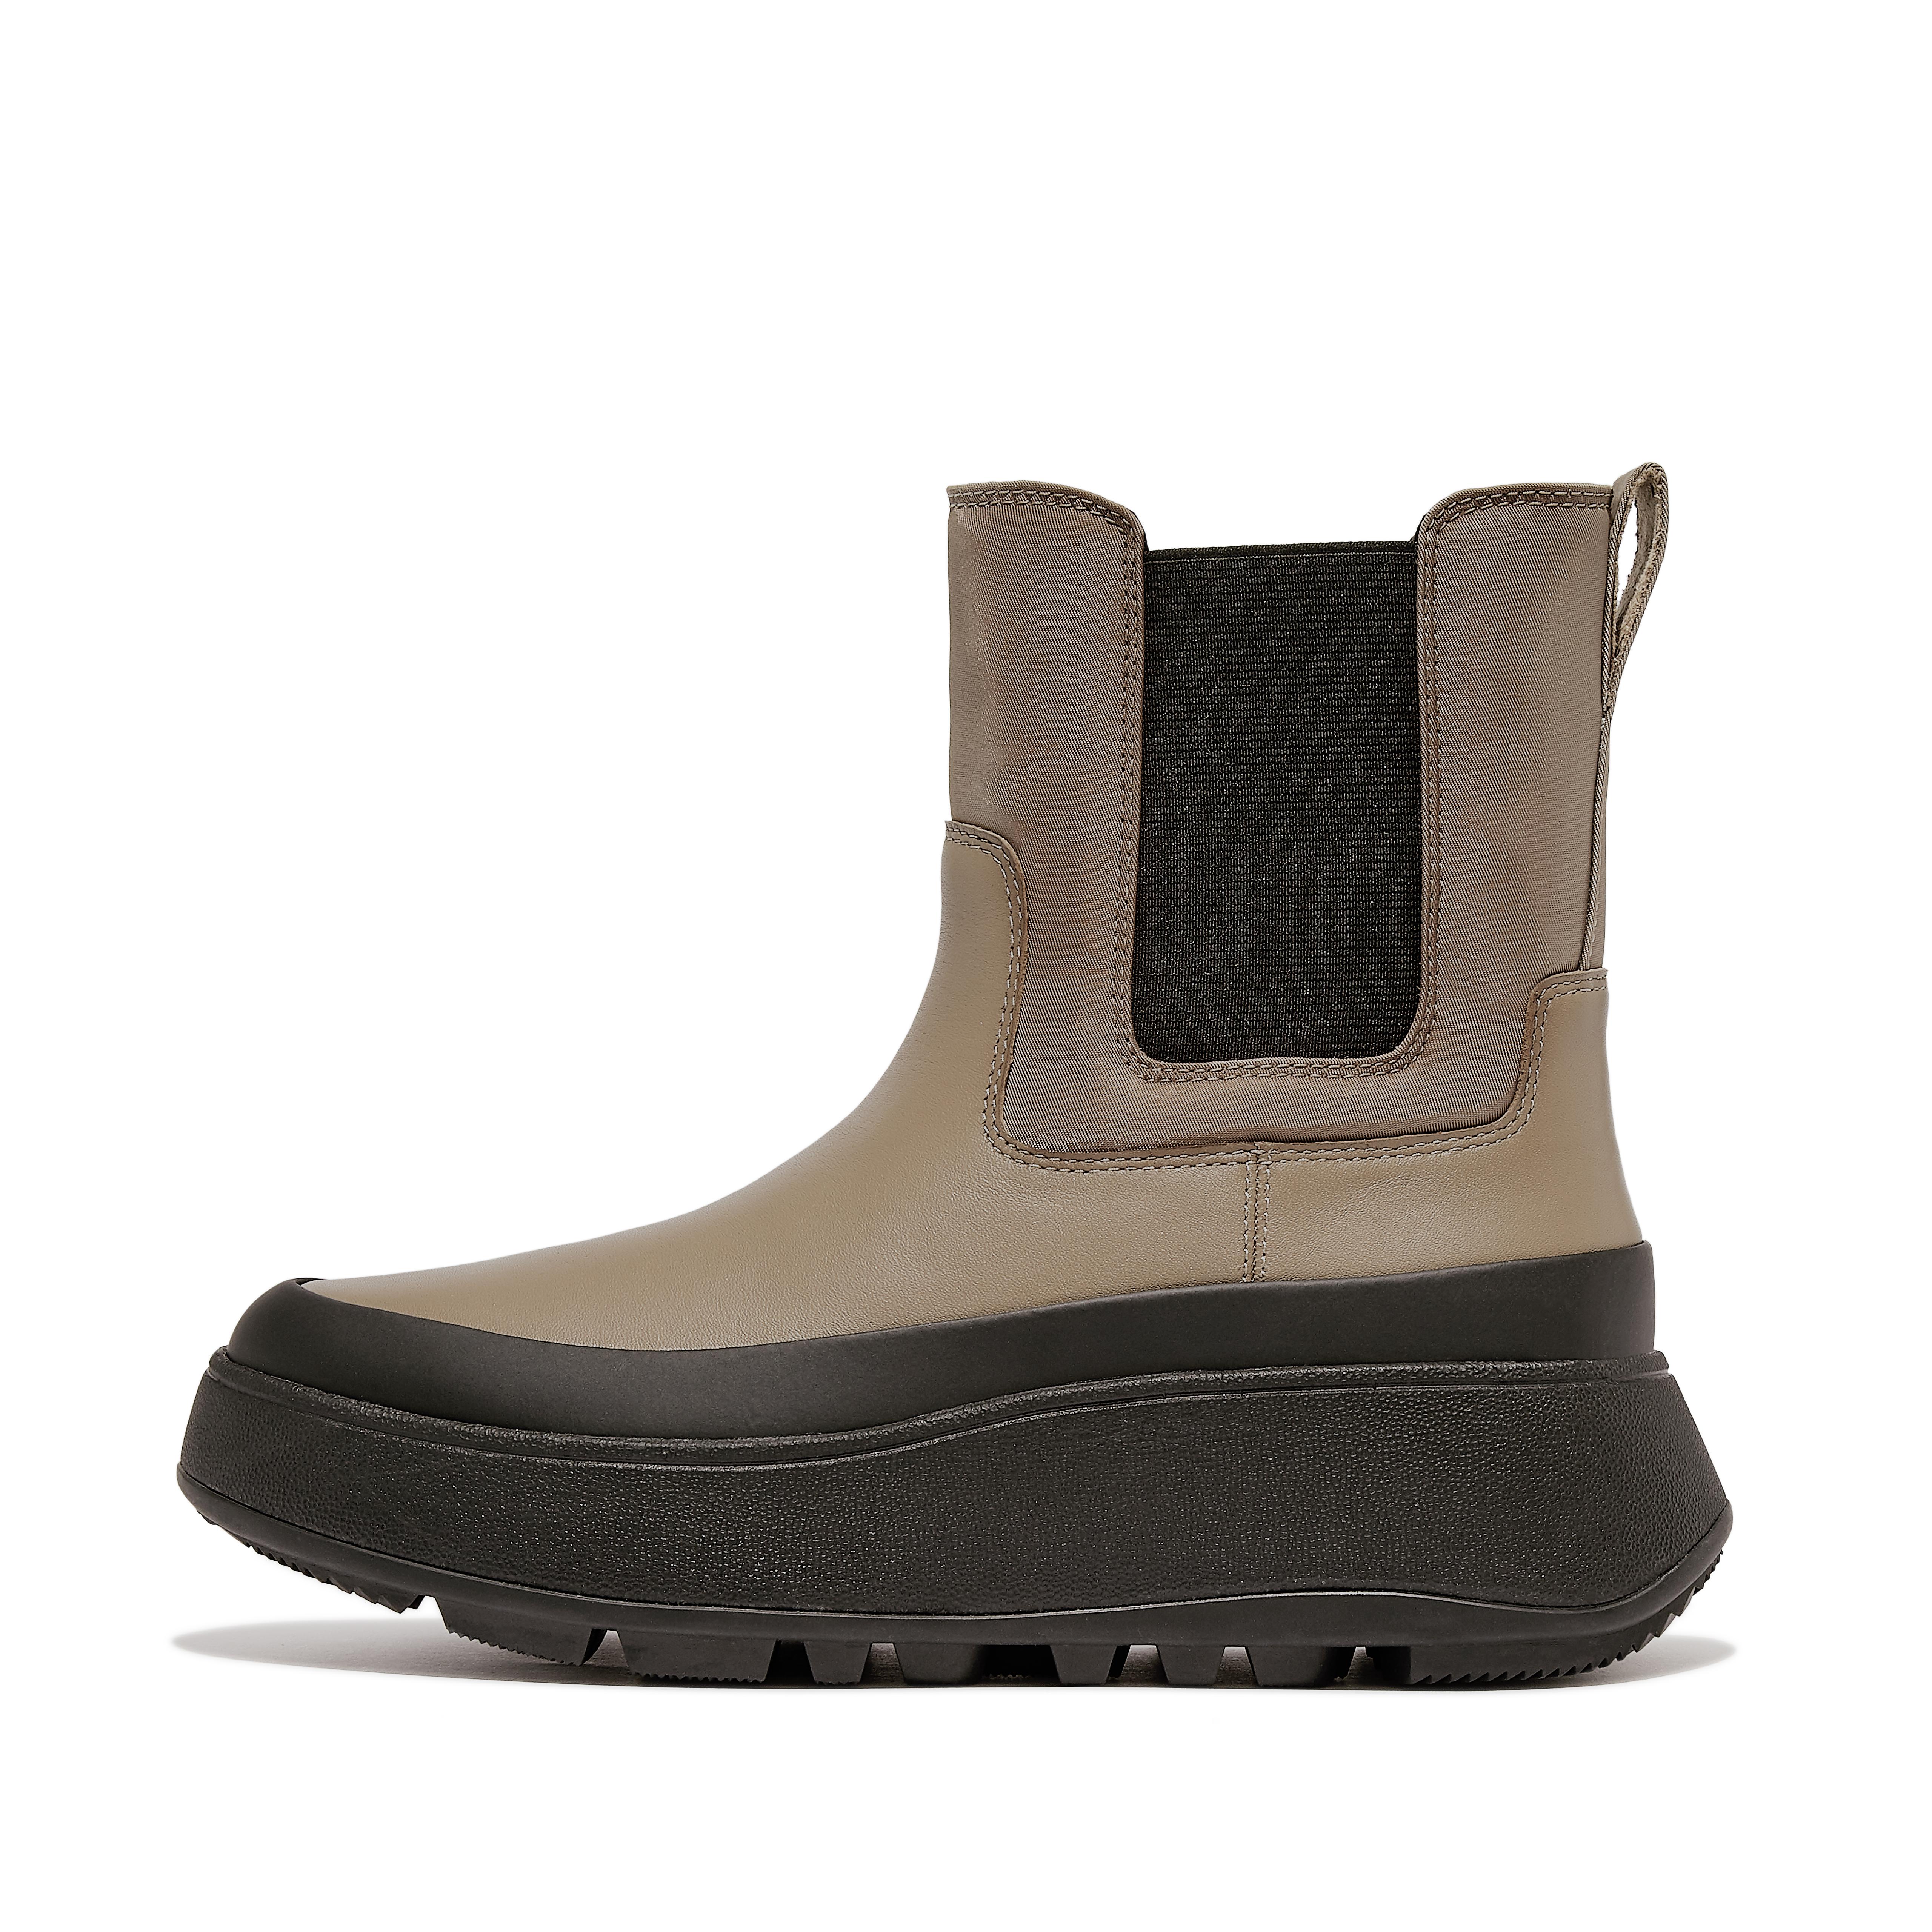 핏플랍 Fitflop Water-Resistant Fabric/Leather Flatform Chelsea Boots,minky grey